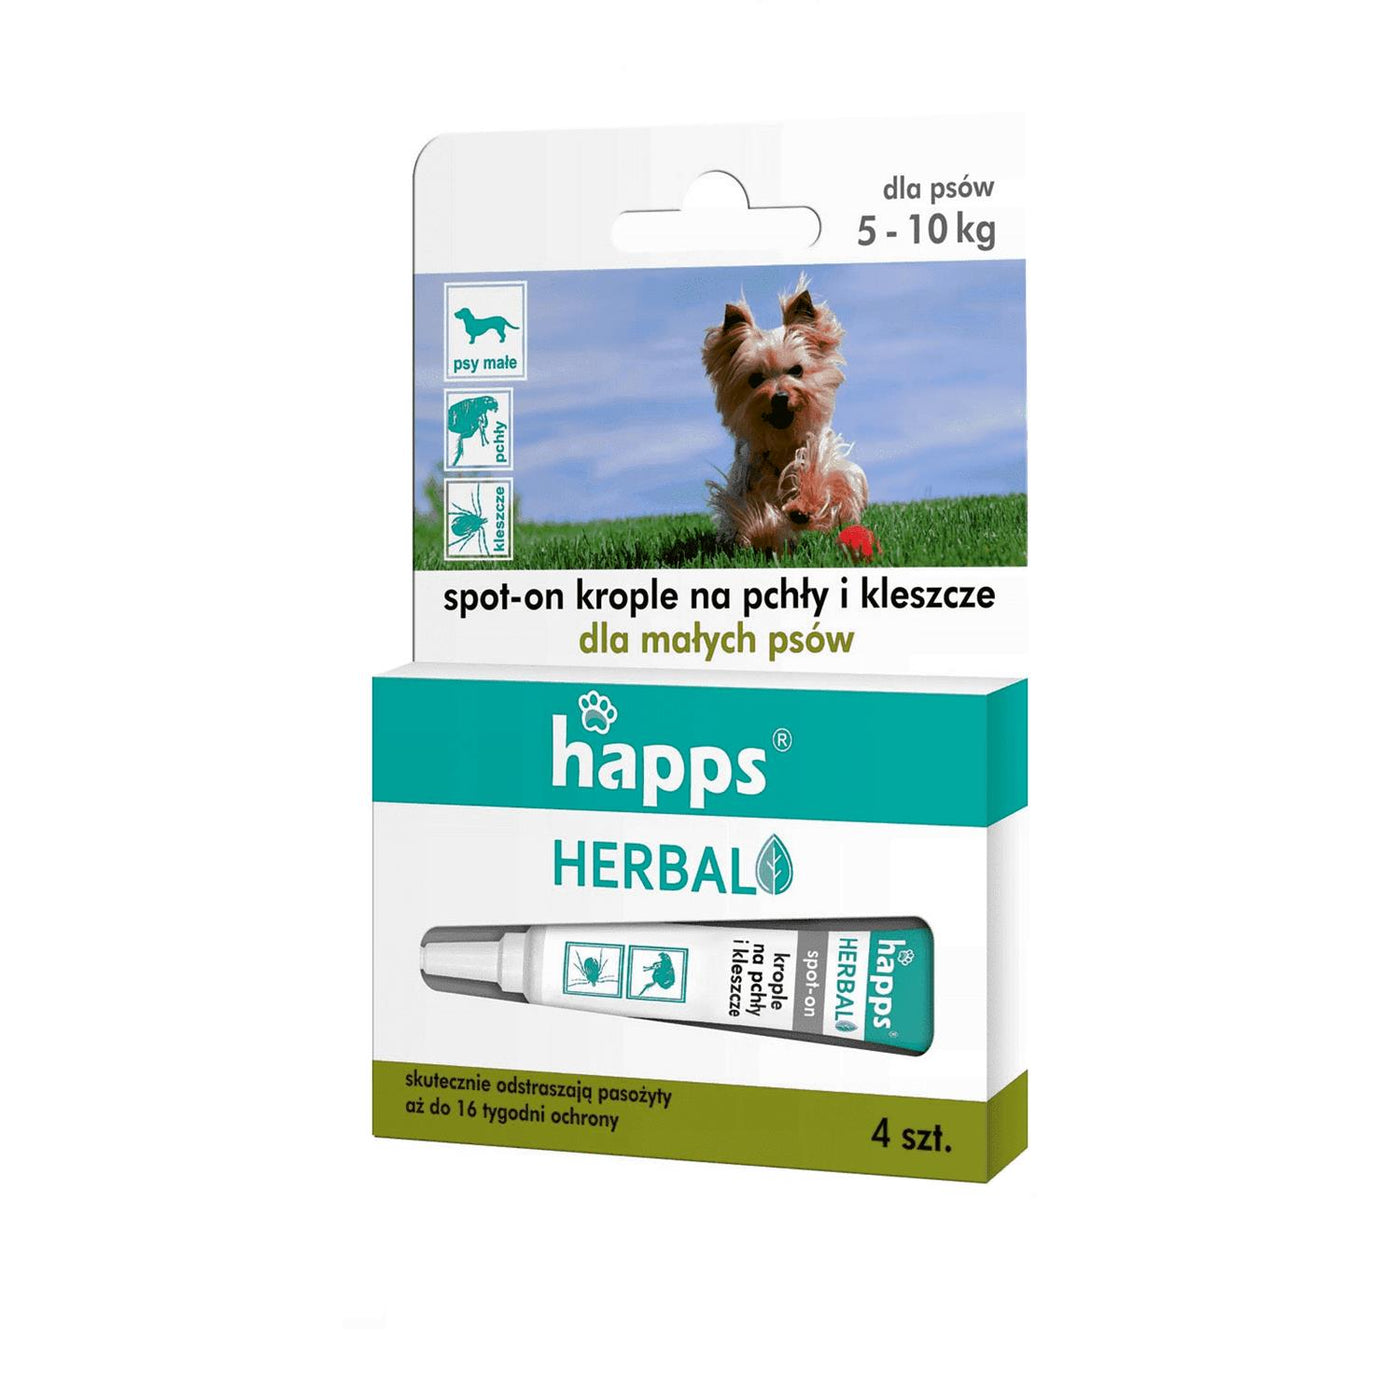 Krople na pchły i kleszcze dla małych psów Happs Herbal